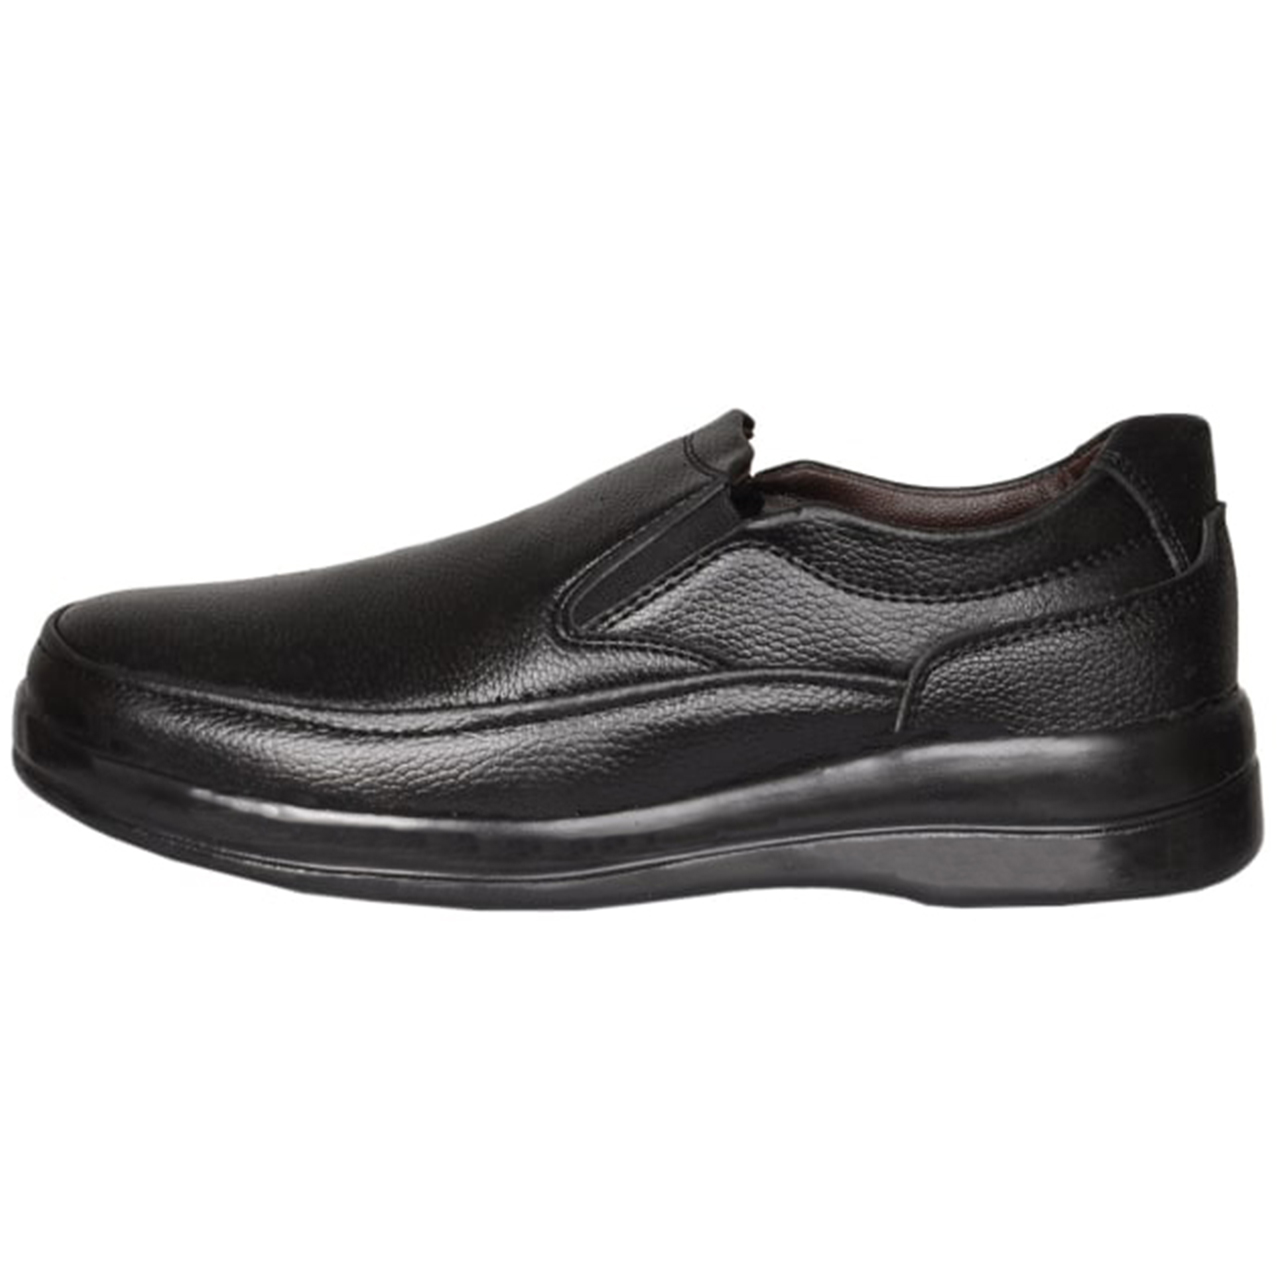 نکته خرید - قیمت روز کفش روزمره مردانه مدل دلتا ARM 3005 خرید